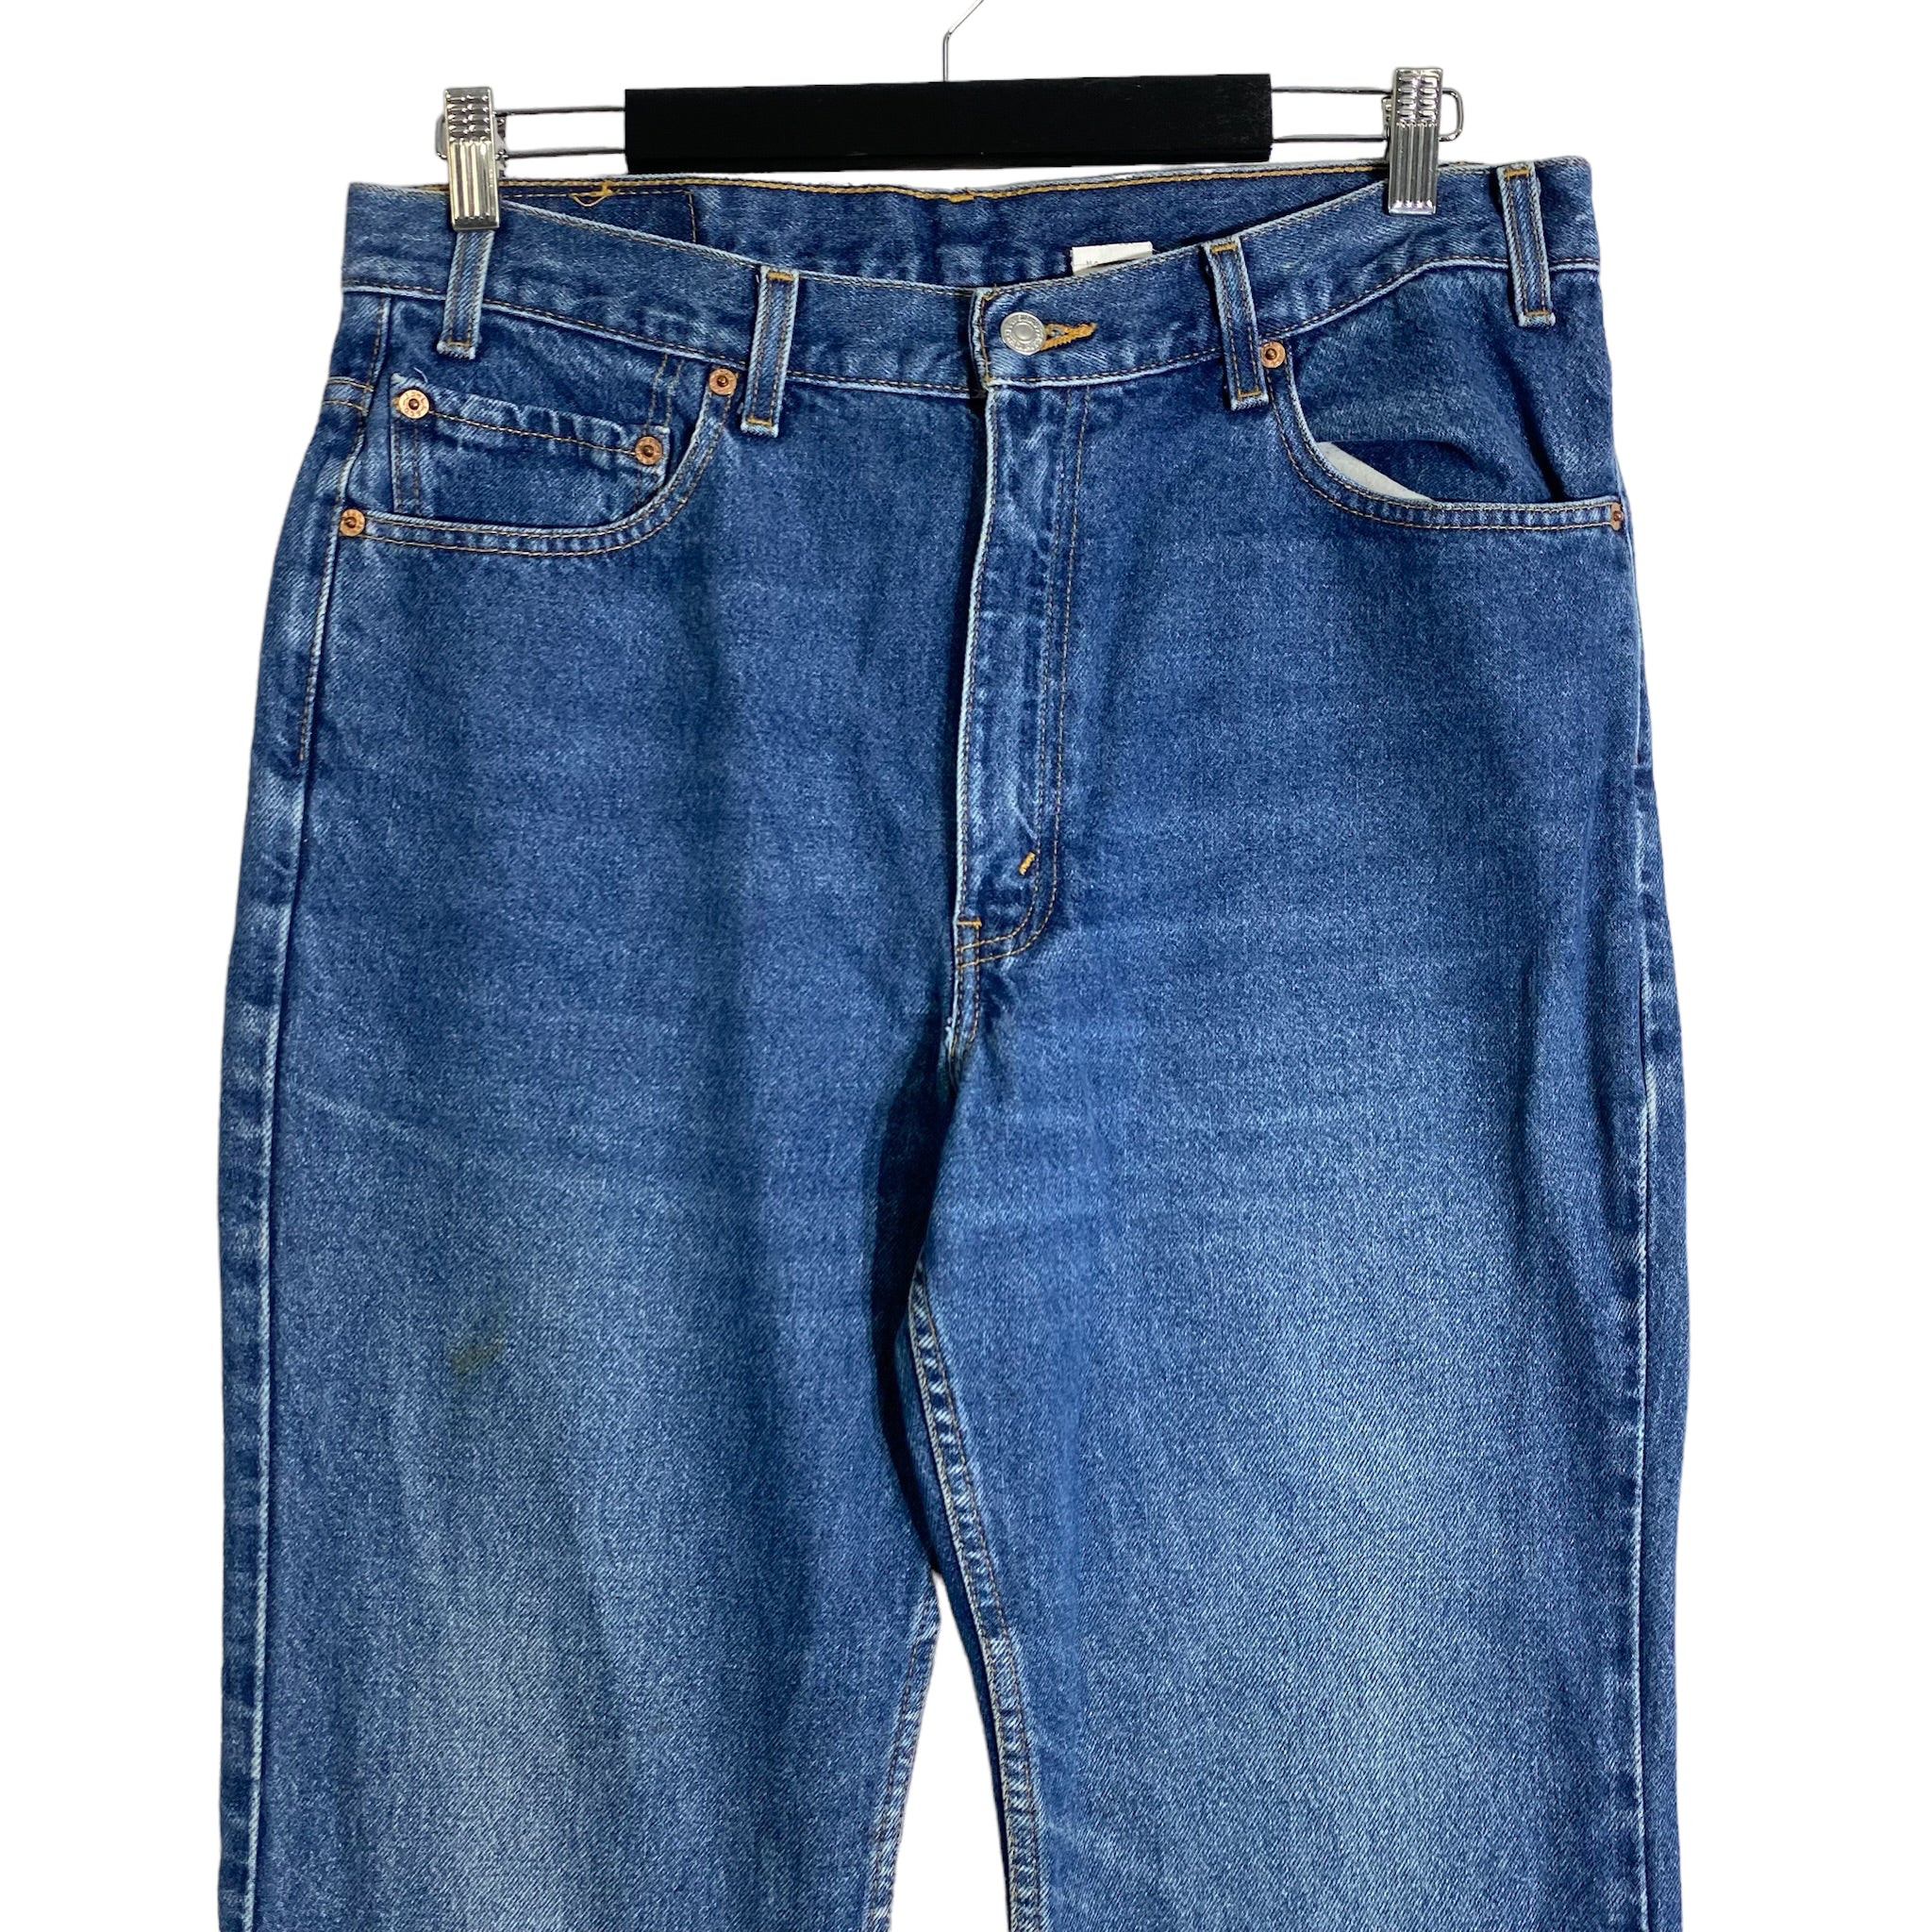 Vintage Levi’s 517 Jeans